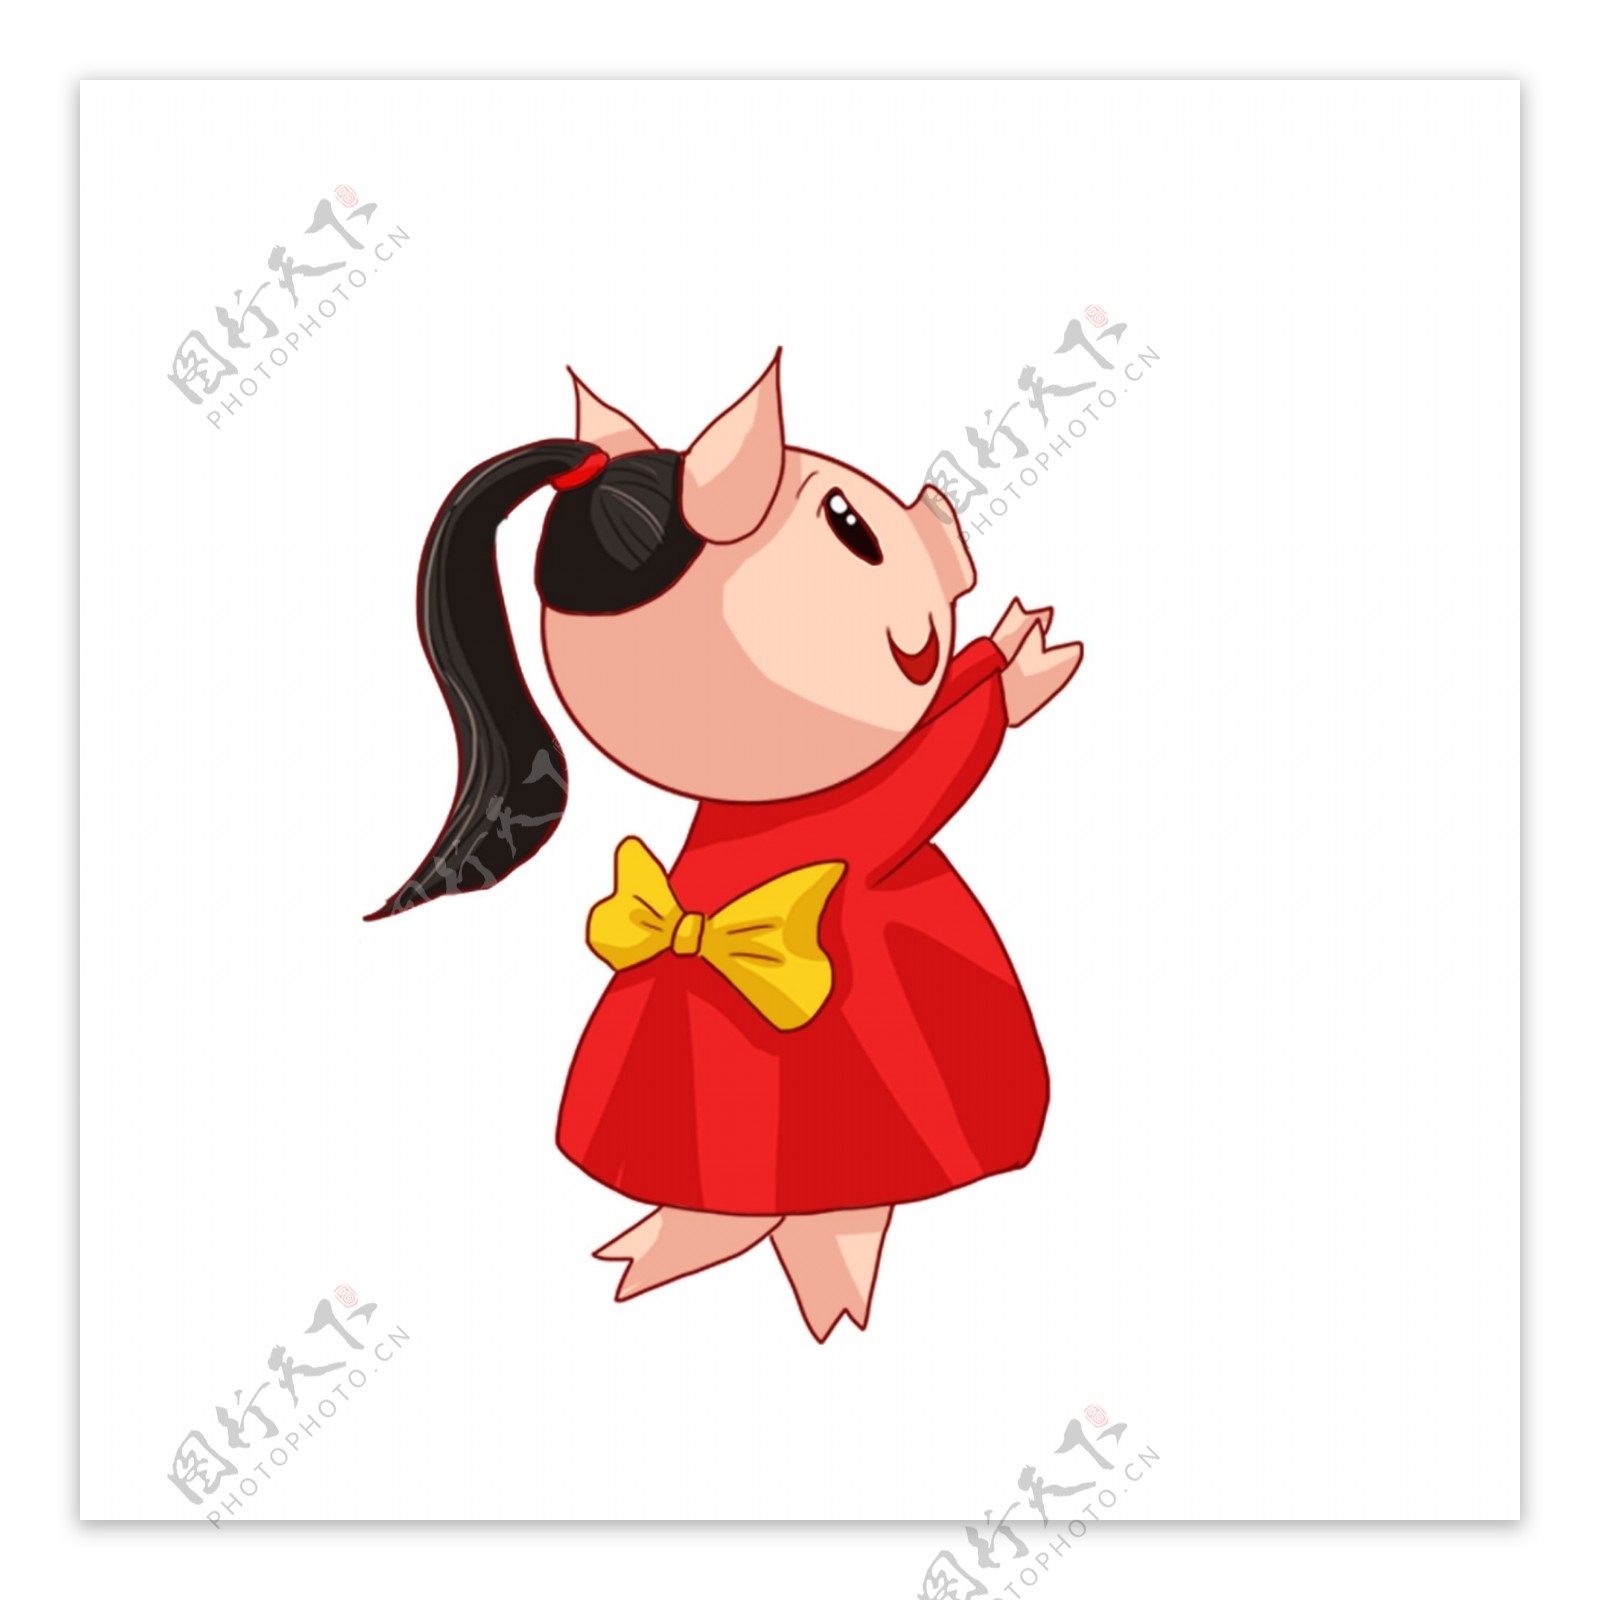 彩绘可爱穿红裙子的小猪猪女孩